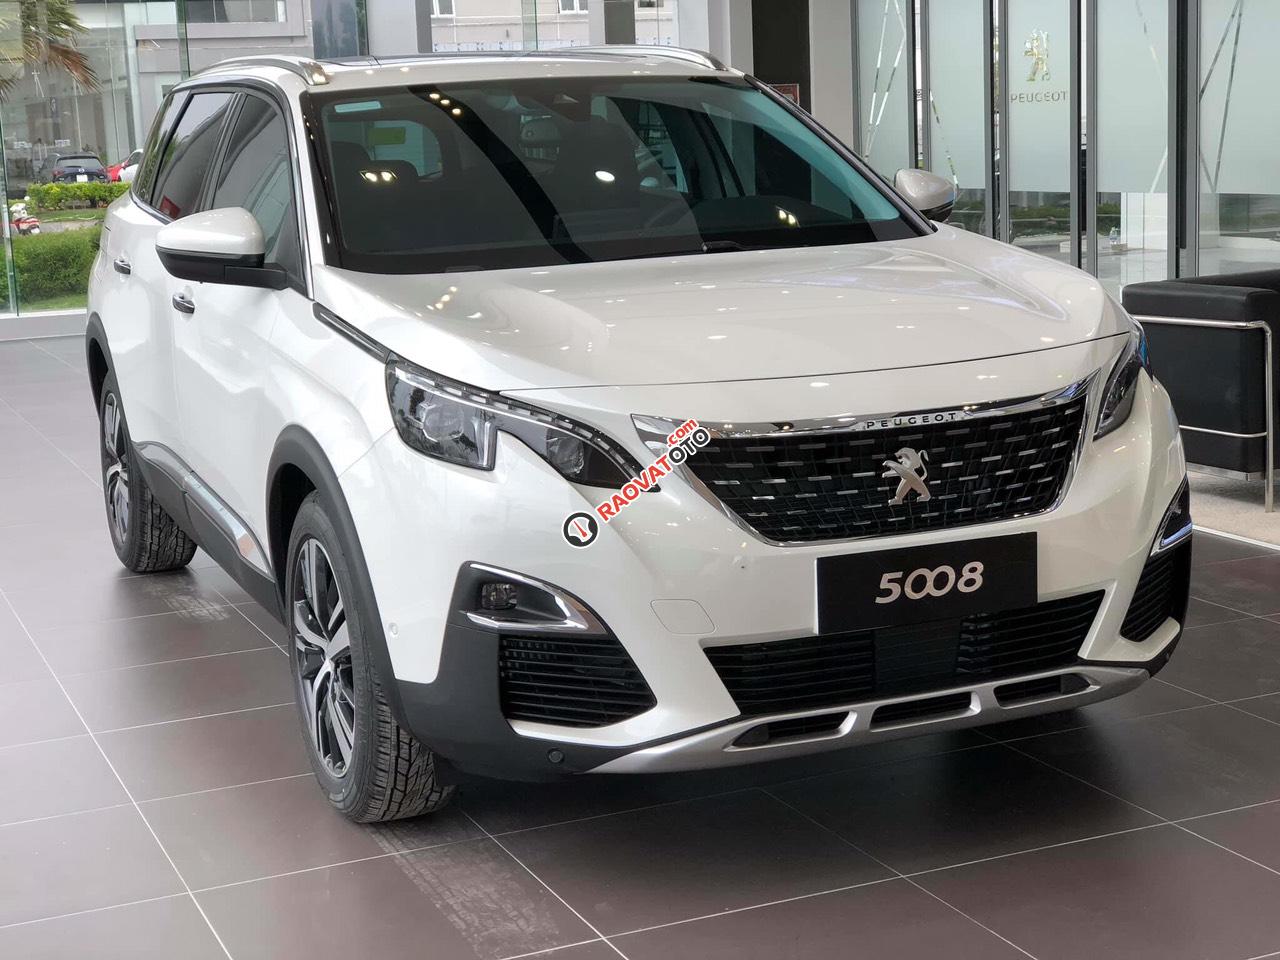 Cần bán xe Peugeot 5008 1.6AT đời 2019 new 100%, màu trắng, giá chỉ 1 tỷ 349 triệu đồng-5